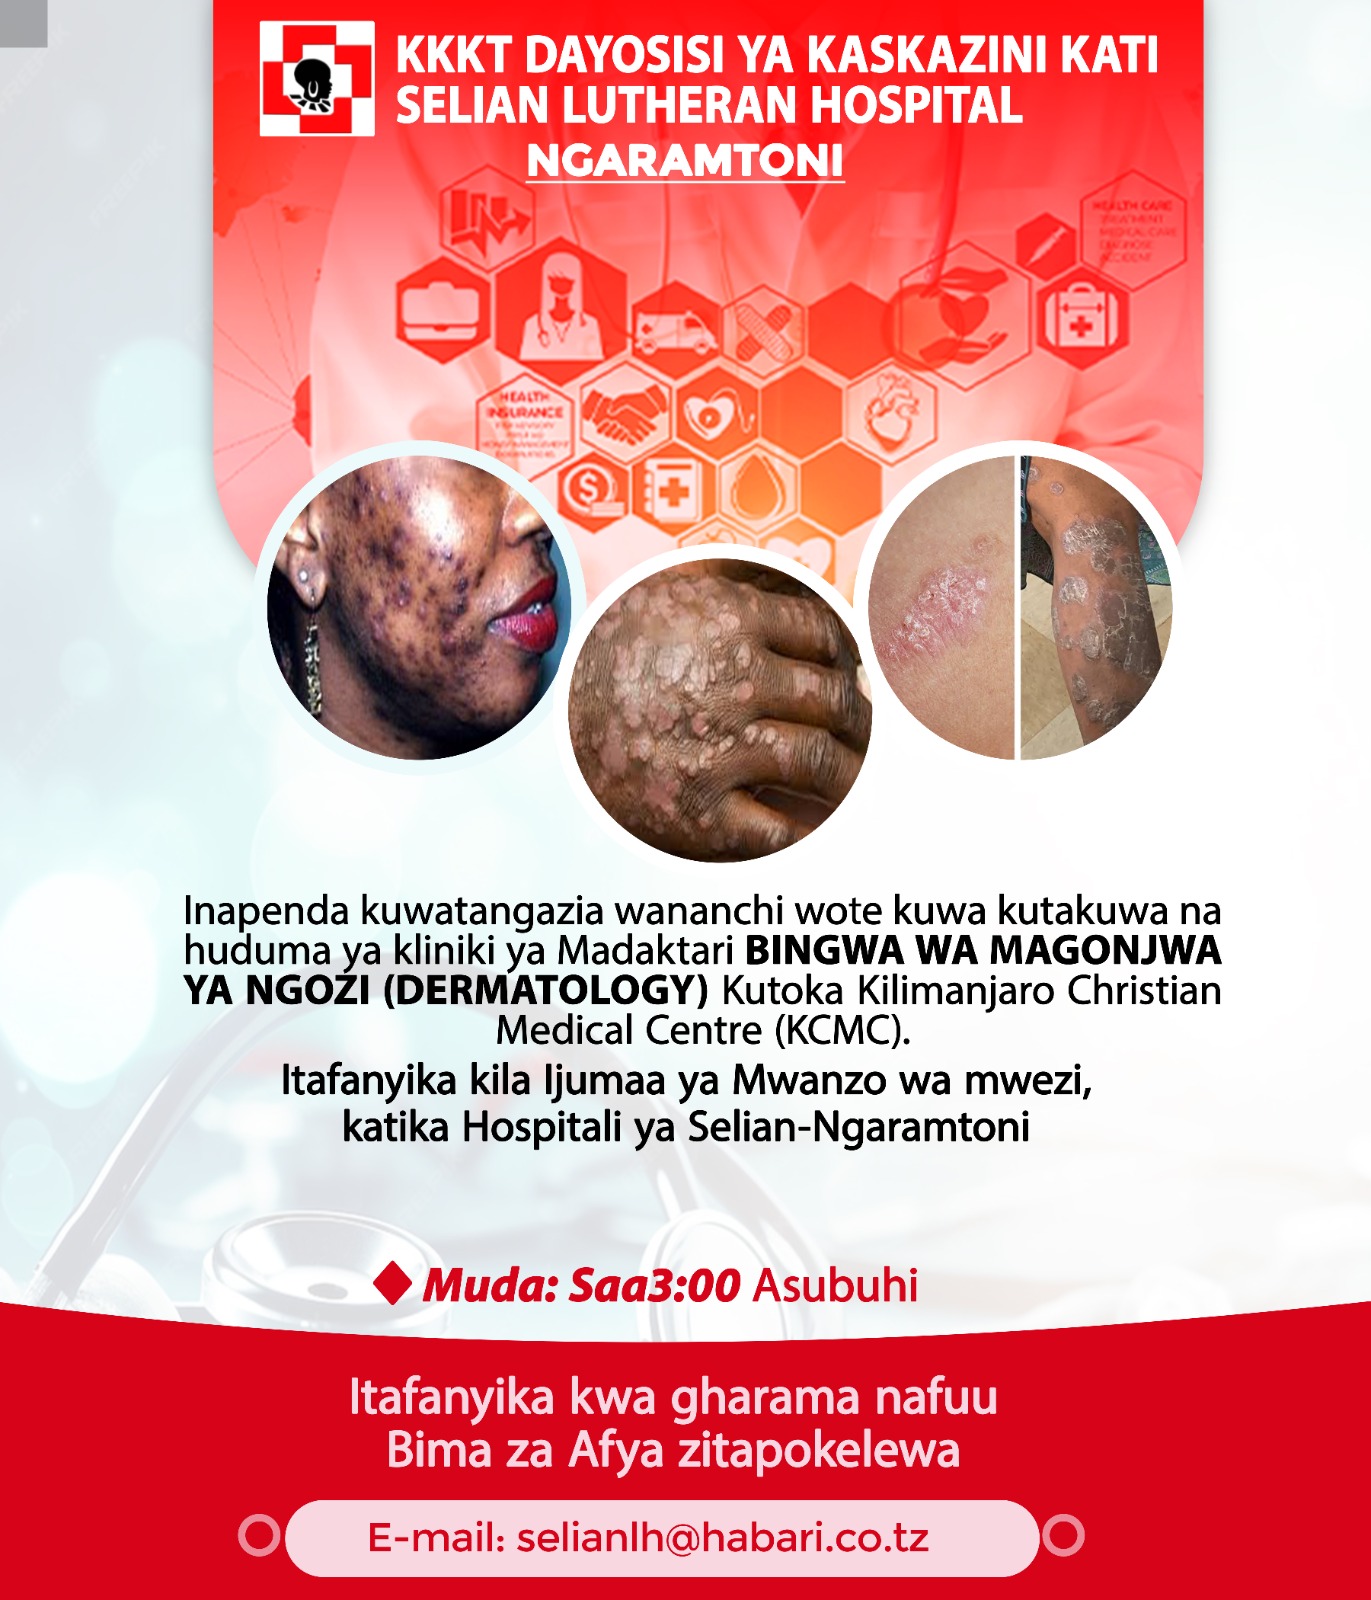 Taarifa Mpya kuhusu huduma ya Kliniki ya MADAKTARI BINGWA WA MAGONJWA YA NGOZI…